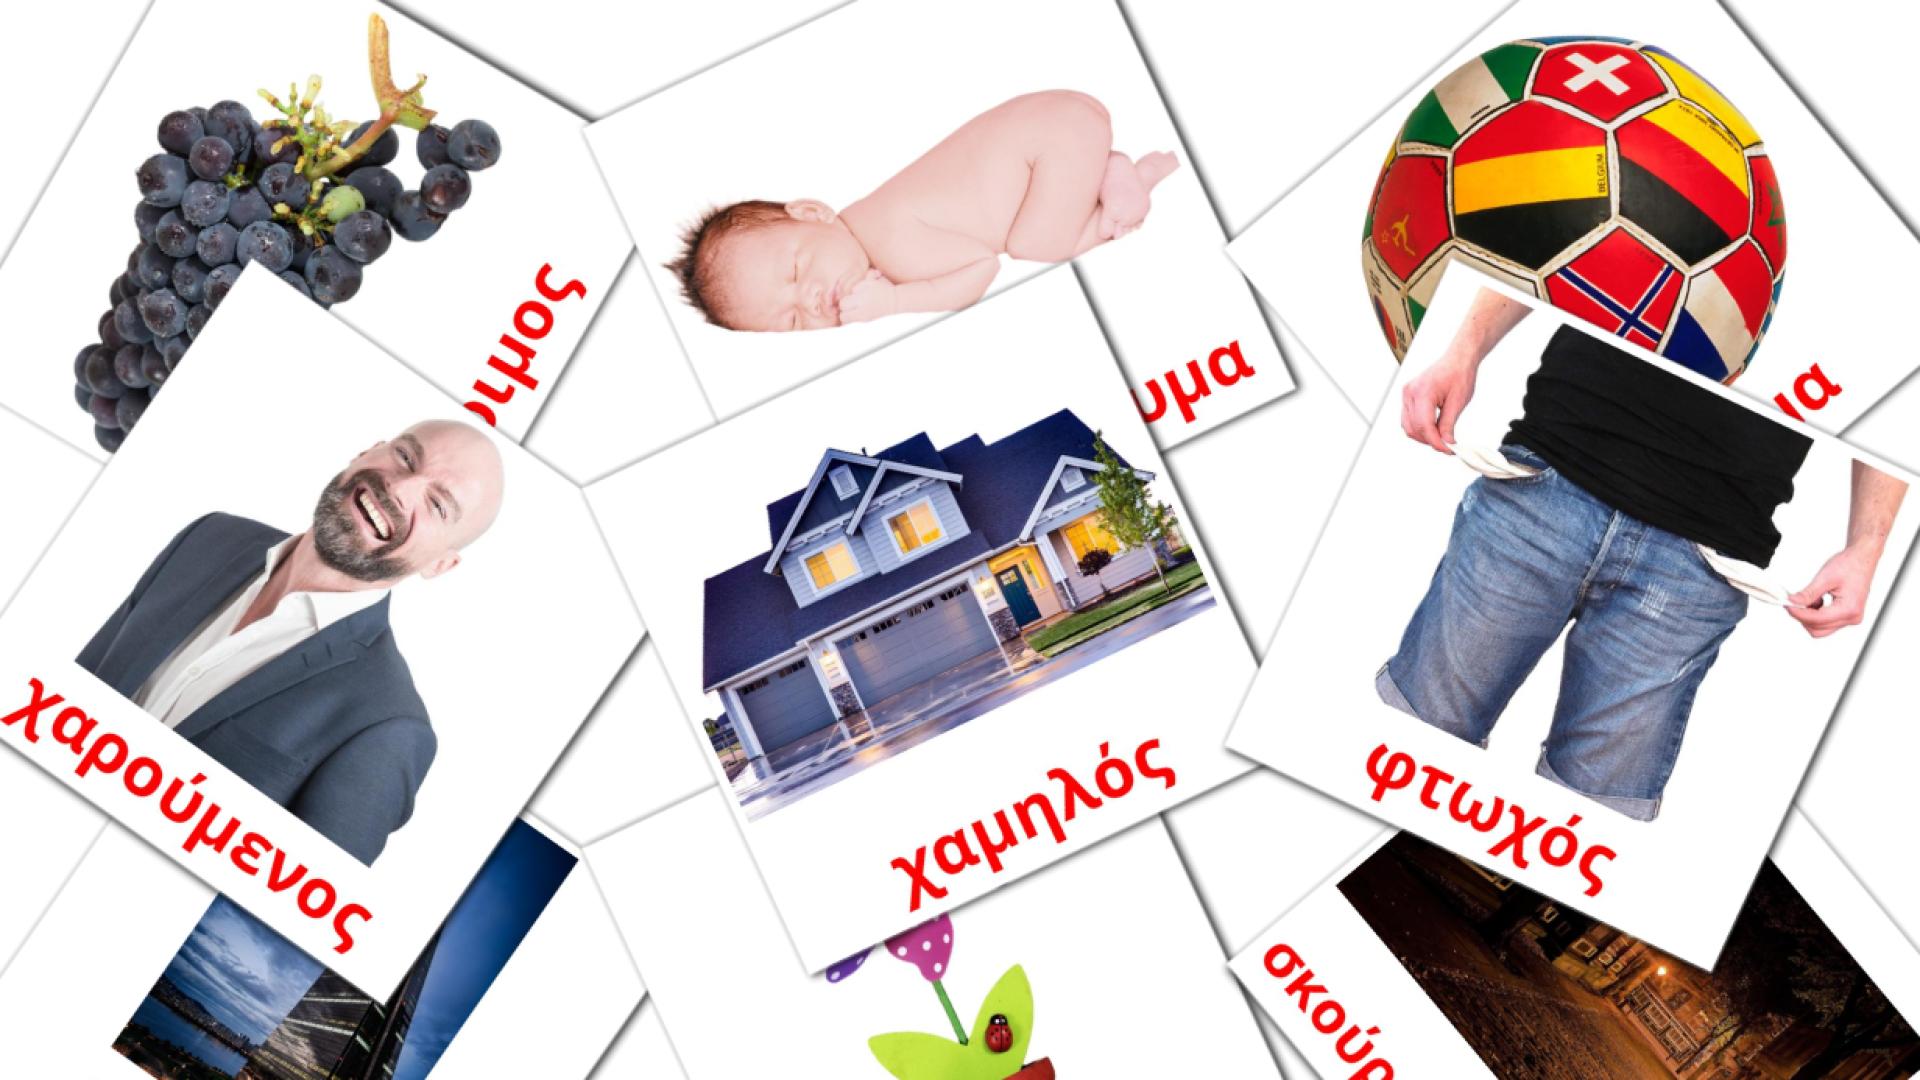 επίθετο greek vocabulary flashcards